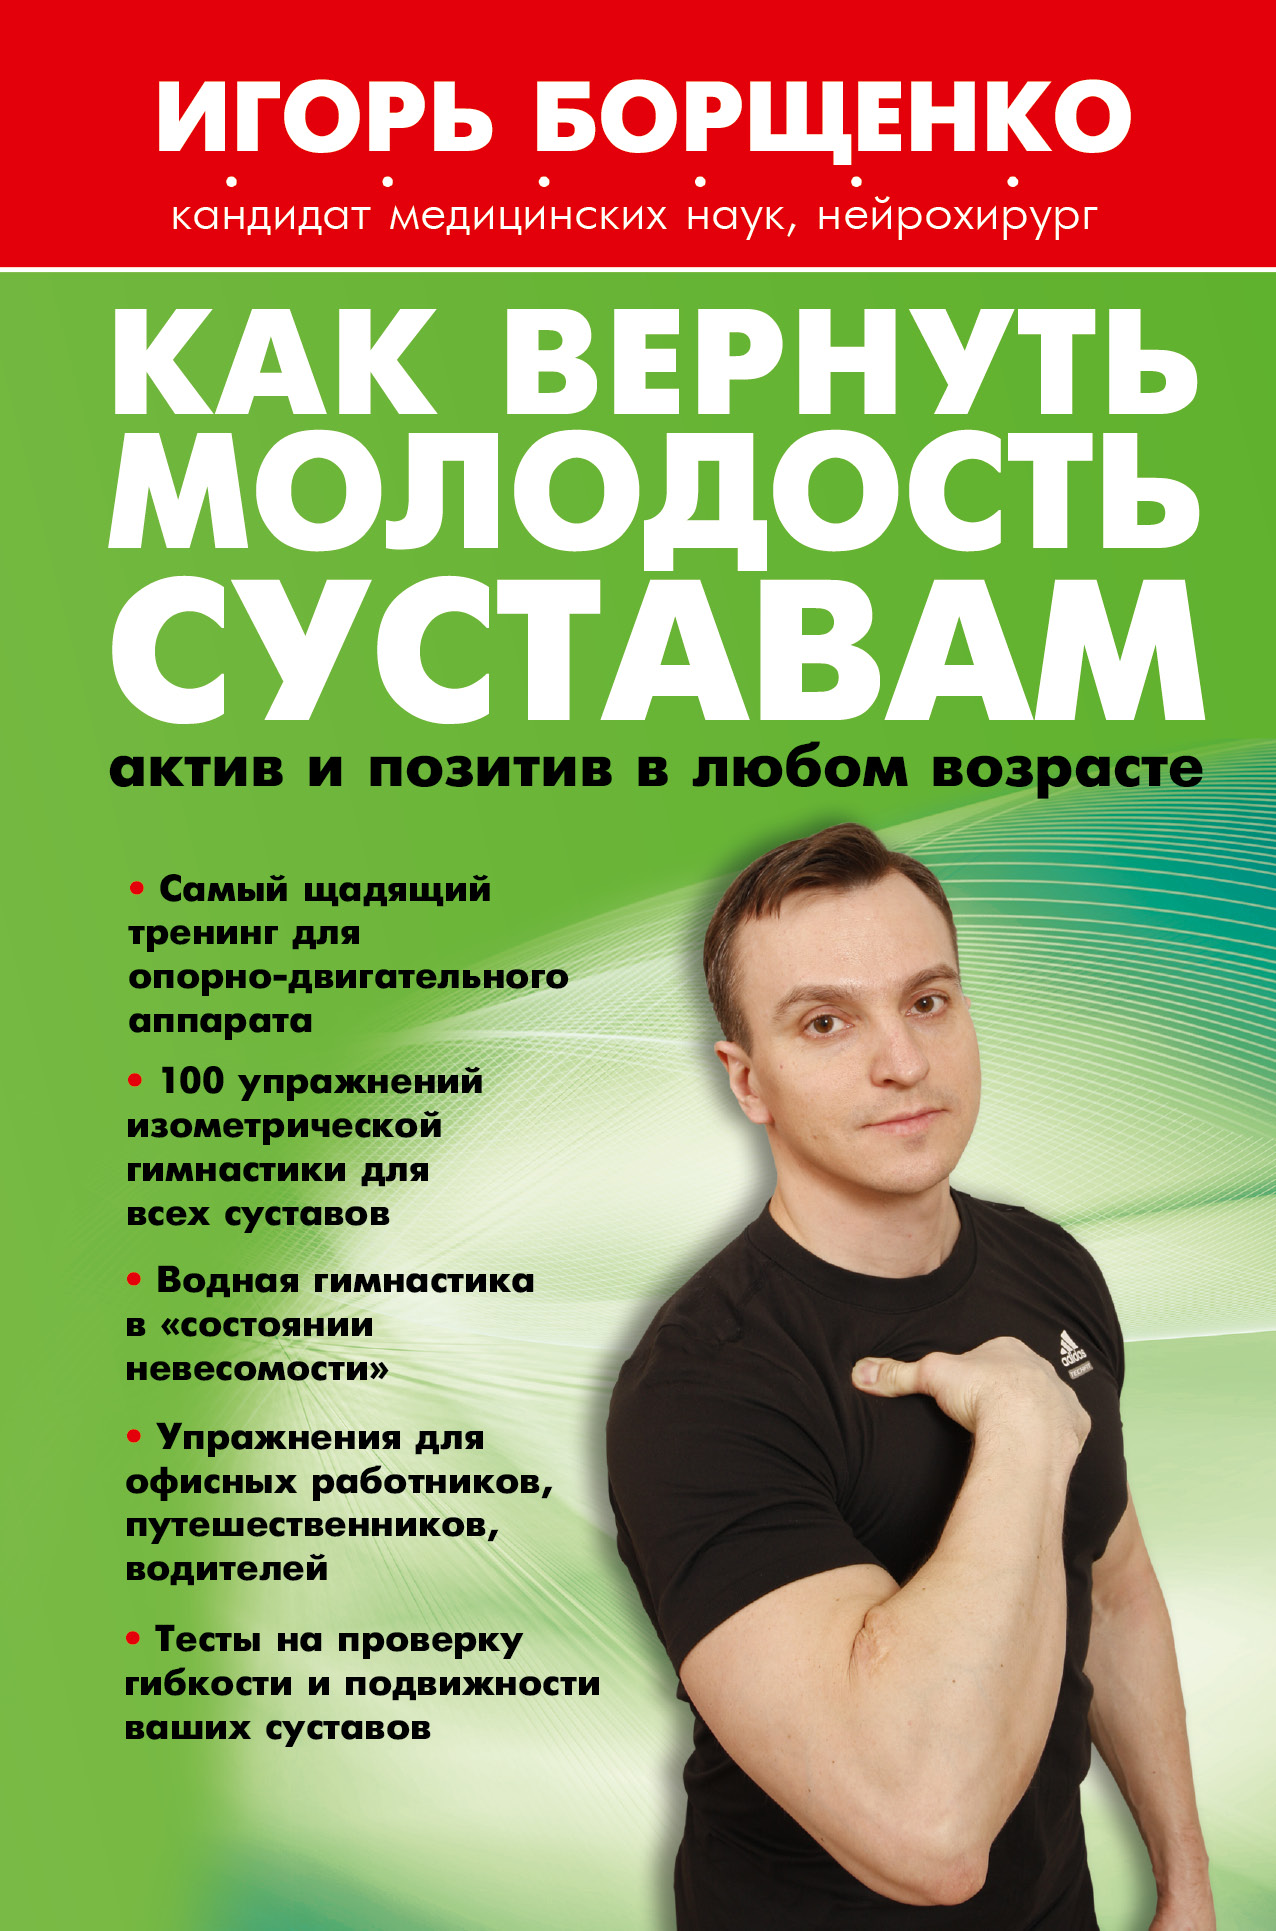 https://cdn.eksmo.ru/v2/ASE000000000720603/COVER/cover13d.jpg